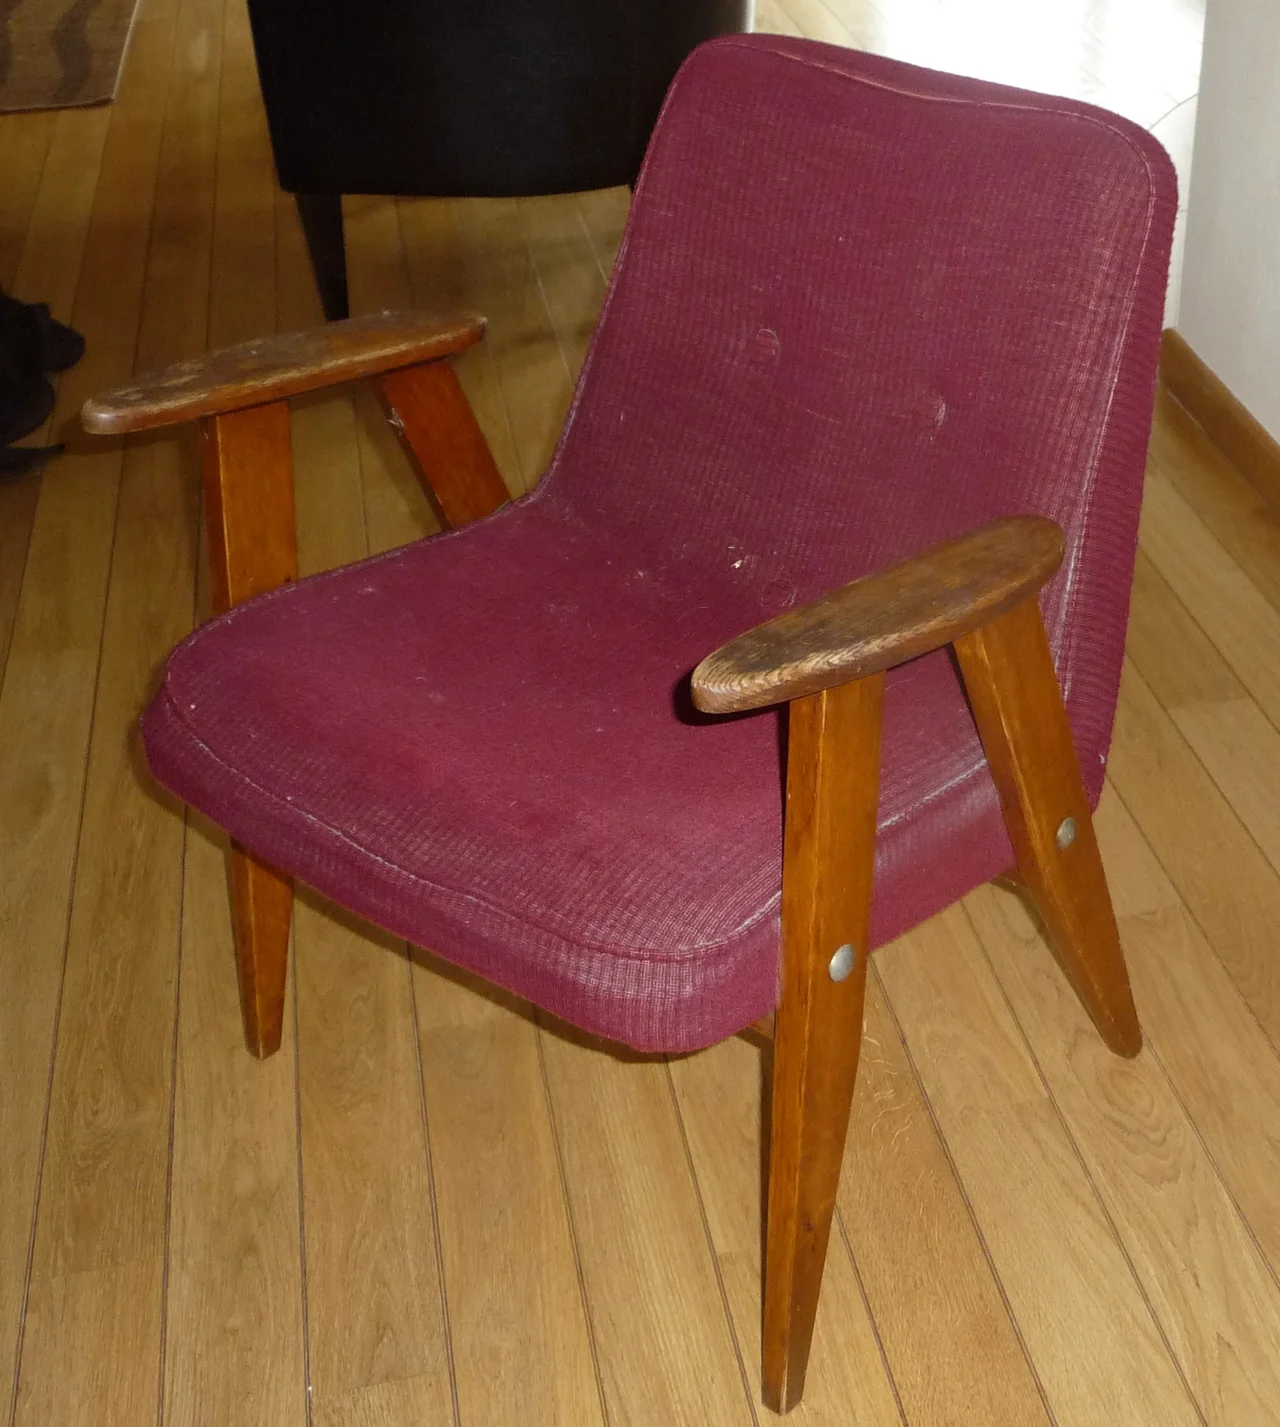 Śmietnikowe znalezisko - oryginalny fotel chierowski model 366 - do renowacji - będzie piękny